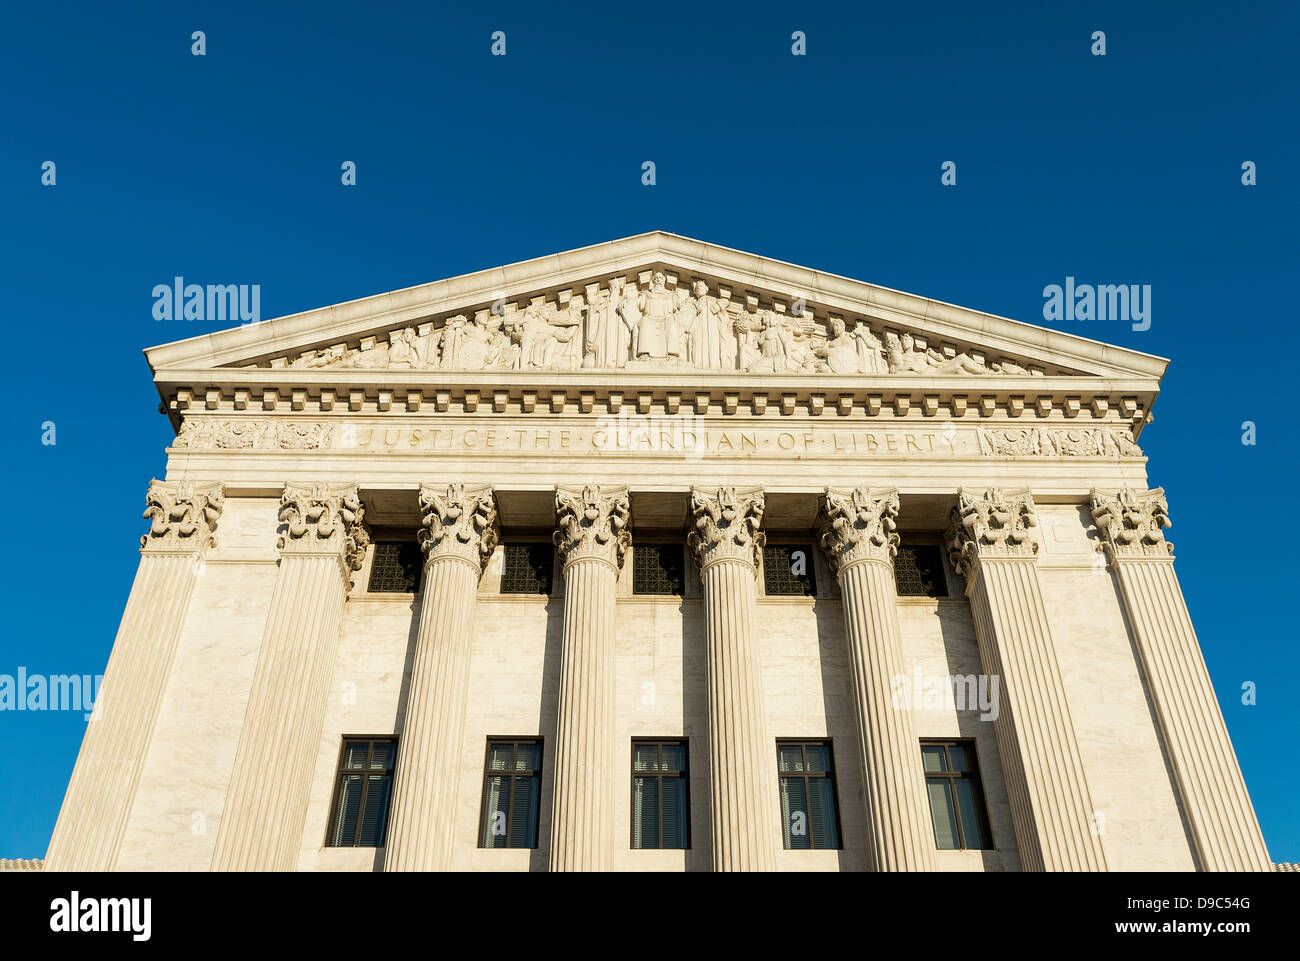 Supreme Court Building, eastern facade, Washington D.C., USA Stock Photo